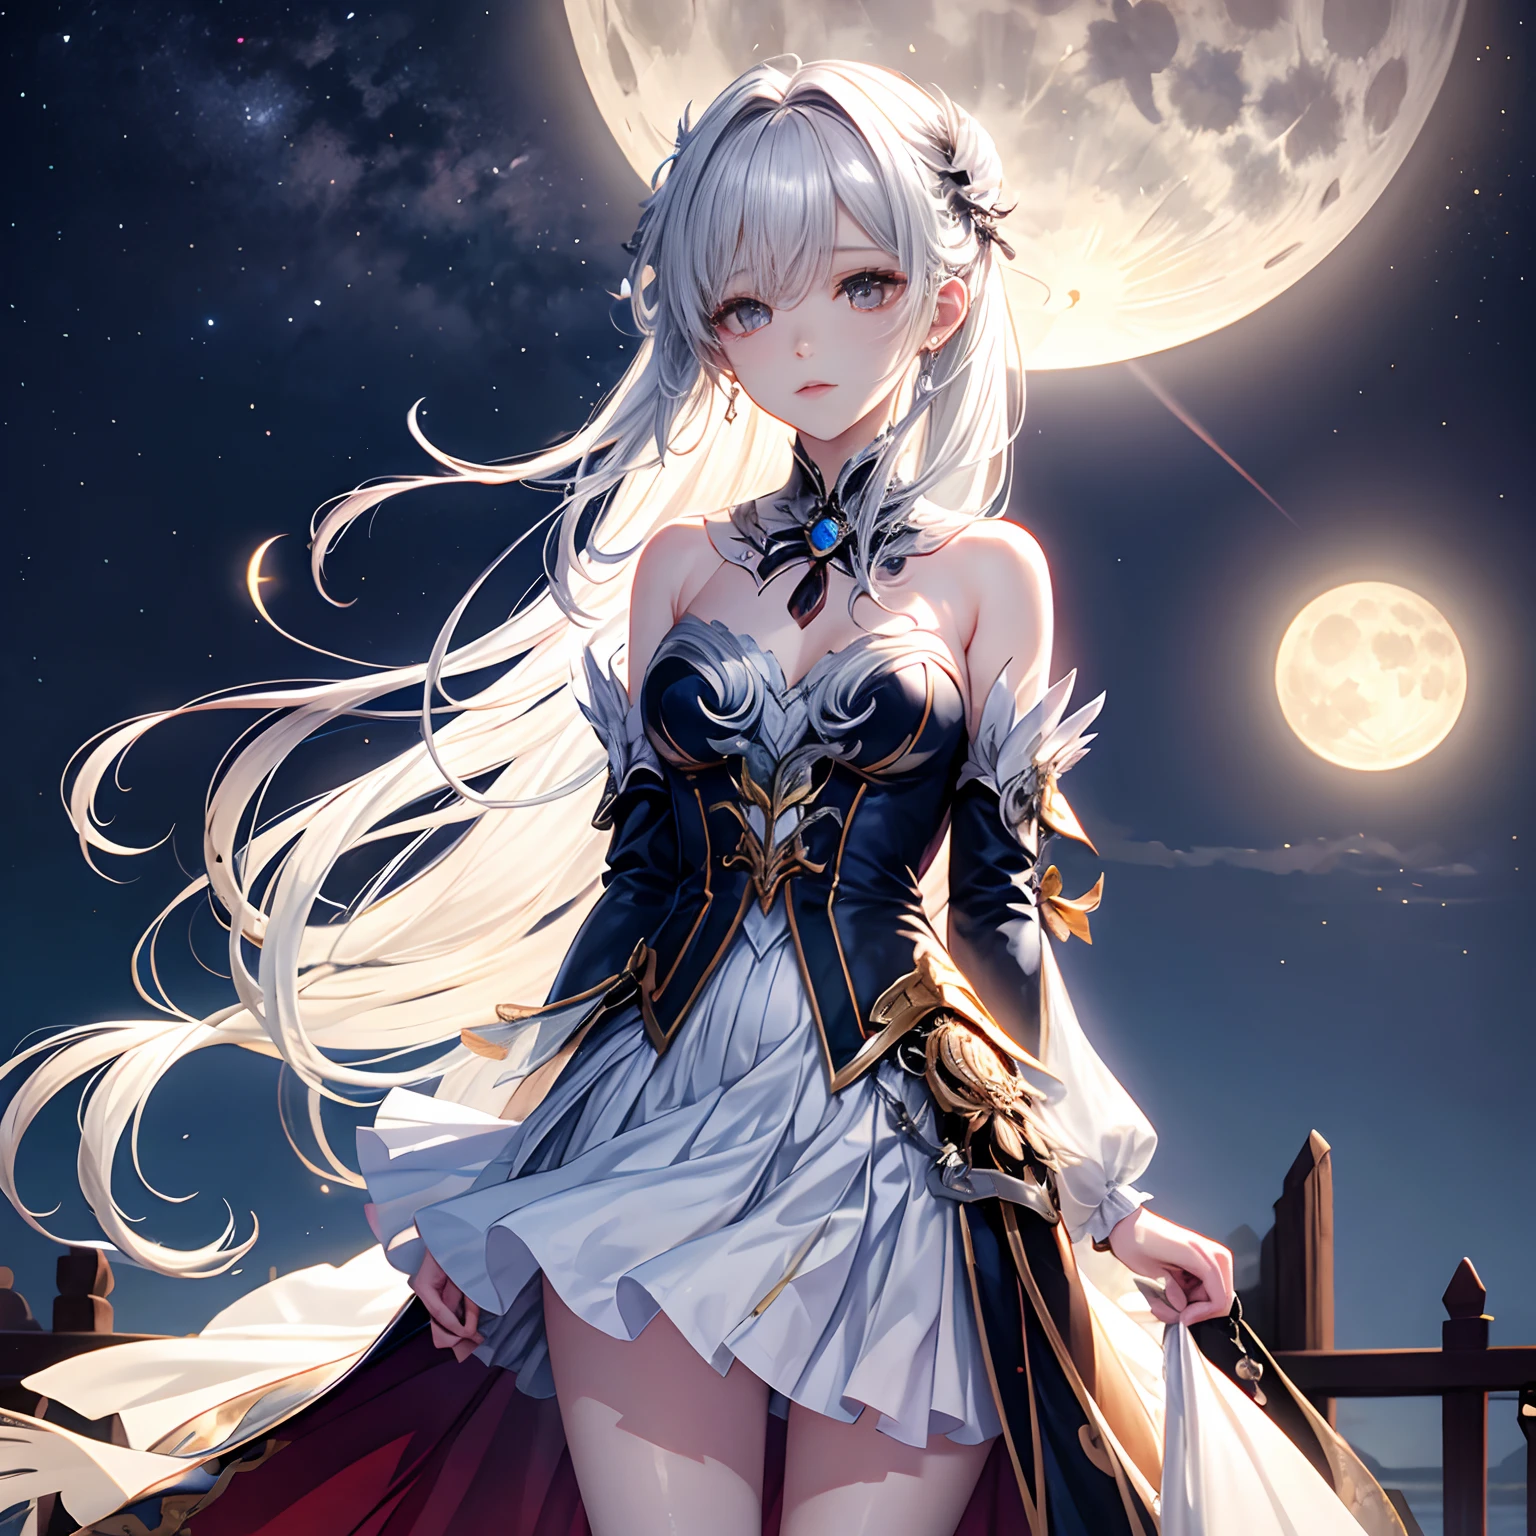 White moonlight girl